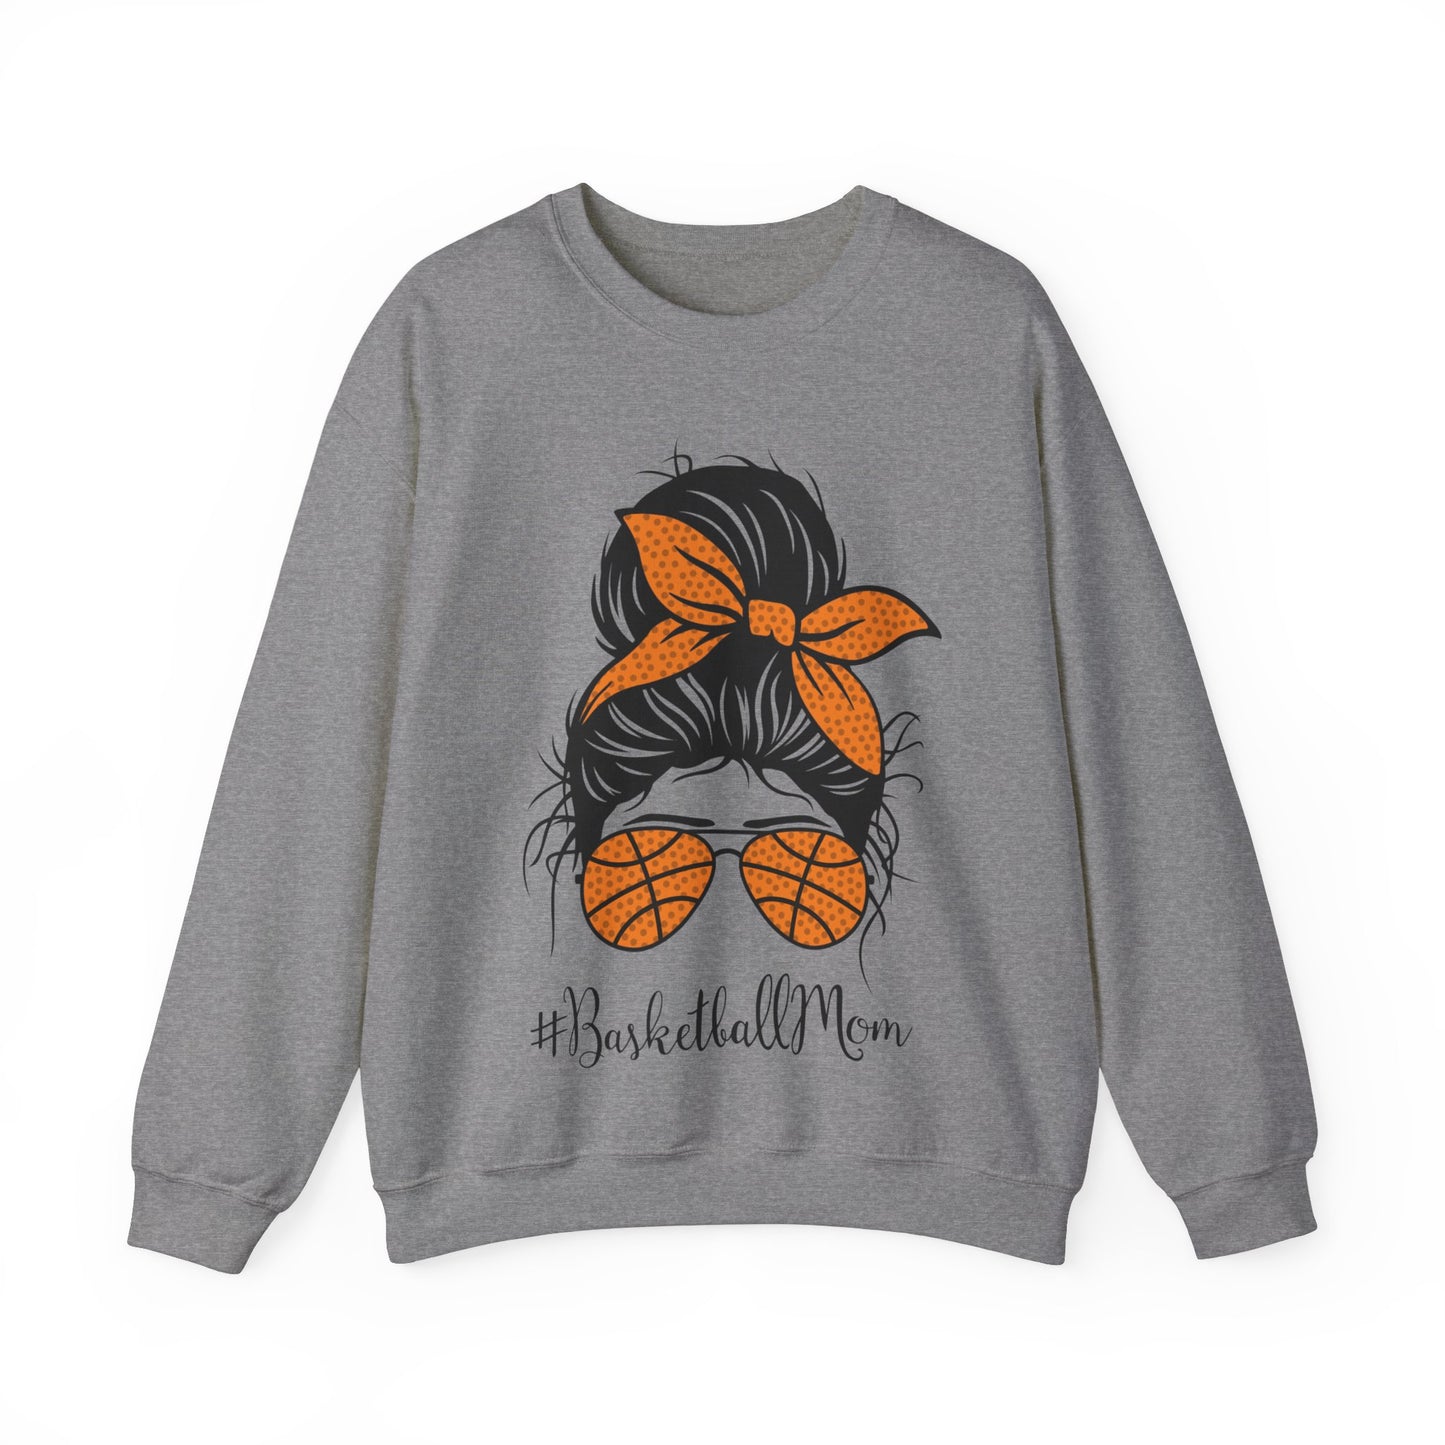 Basketball Mom - Crewneck Sweatshirt